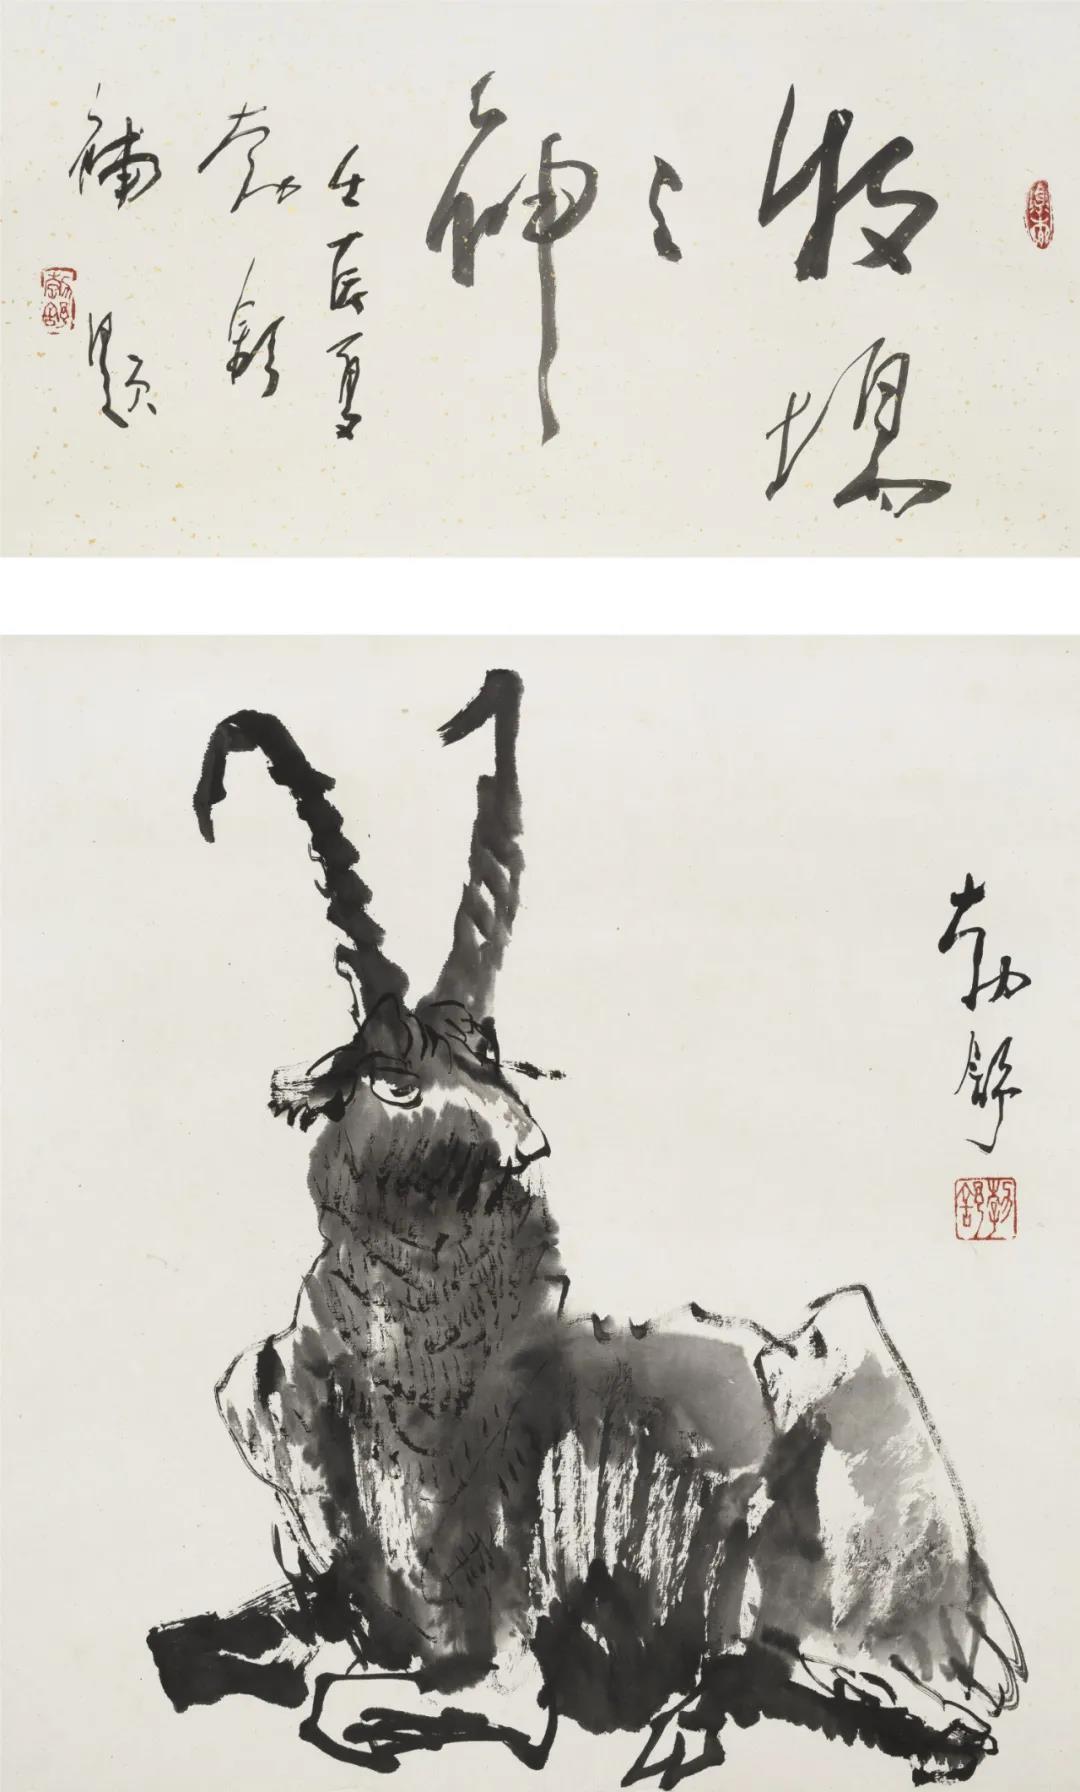 刘勃舒 牧场之神 纸本水墨 85cm×52cm 2012年